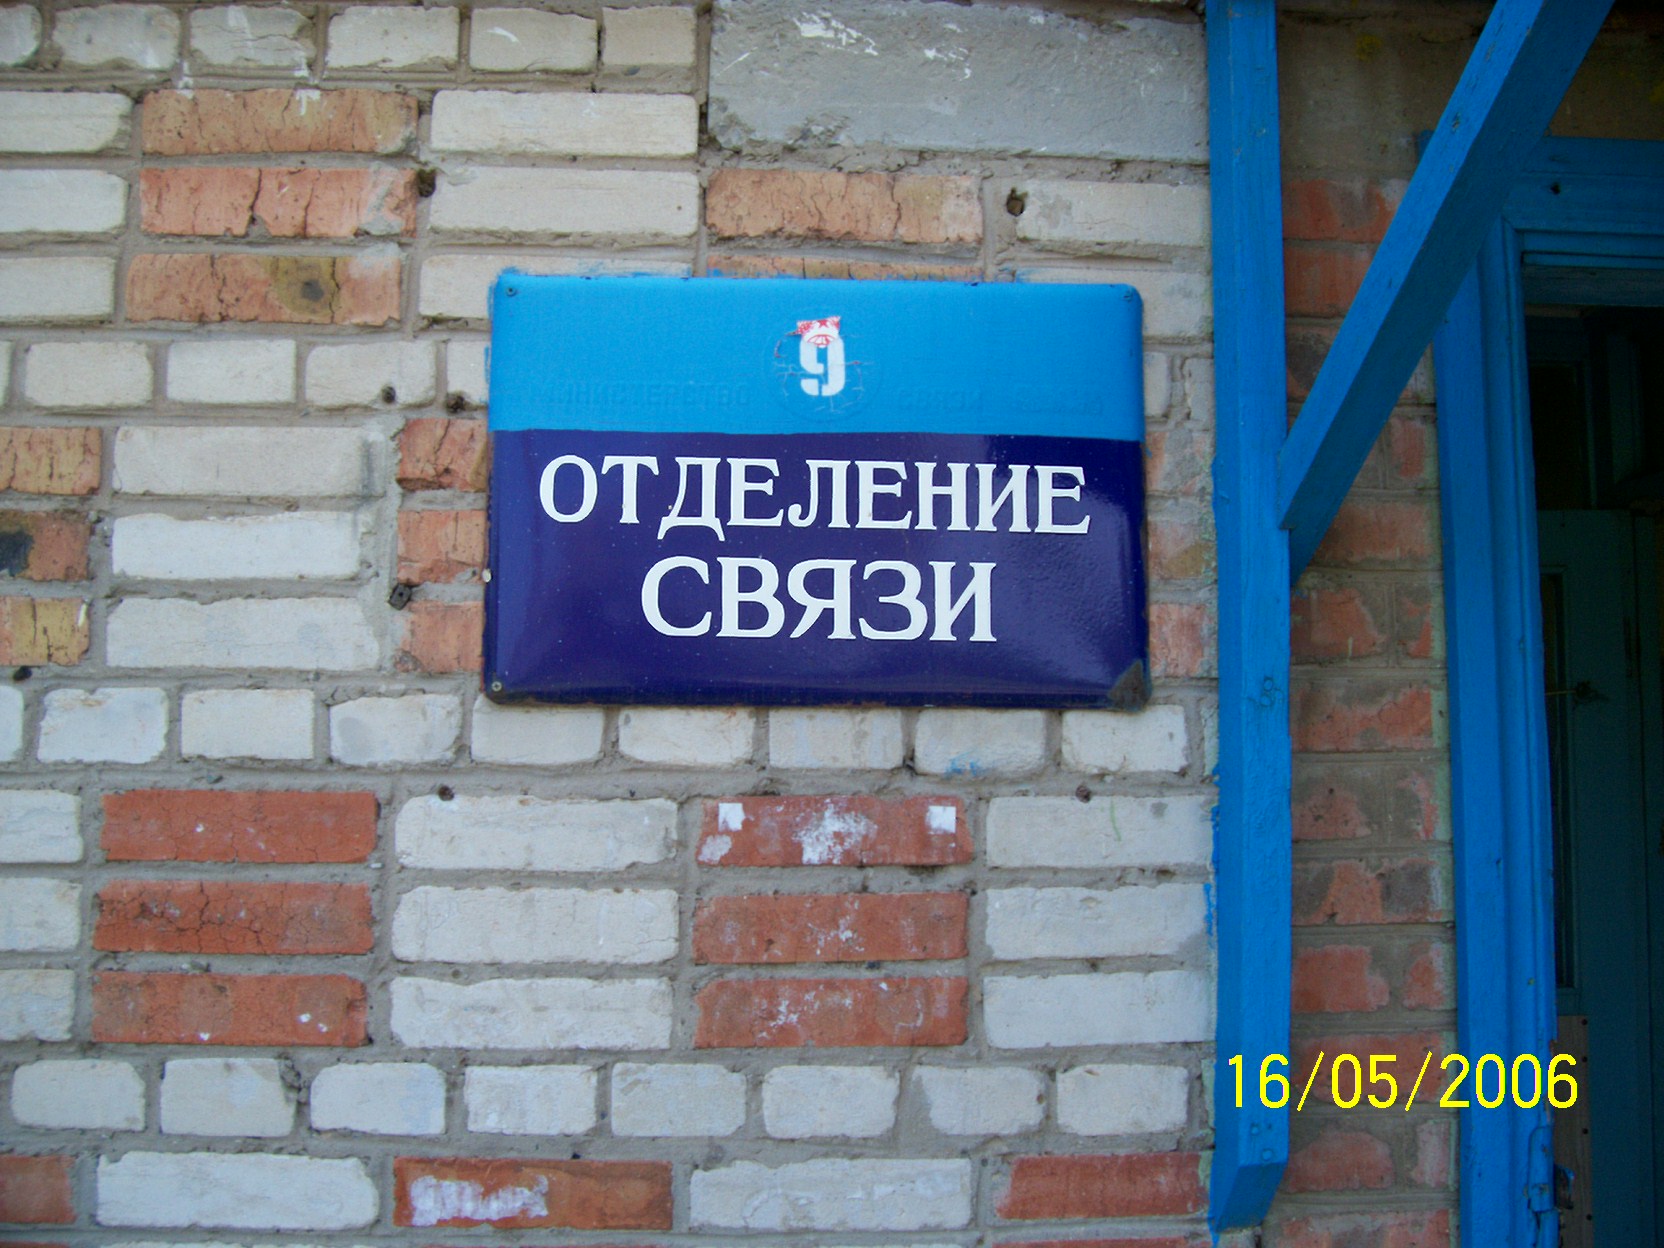 ВХОД, отделение почтовой связи 347639, Ростовская обл., Сальск